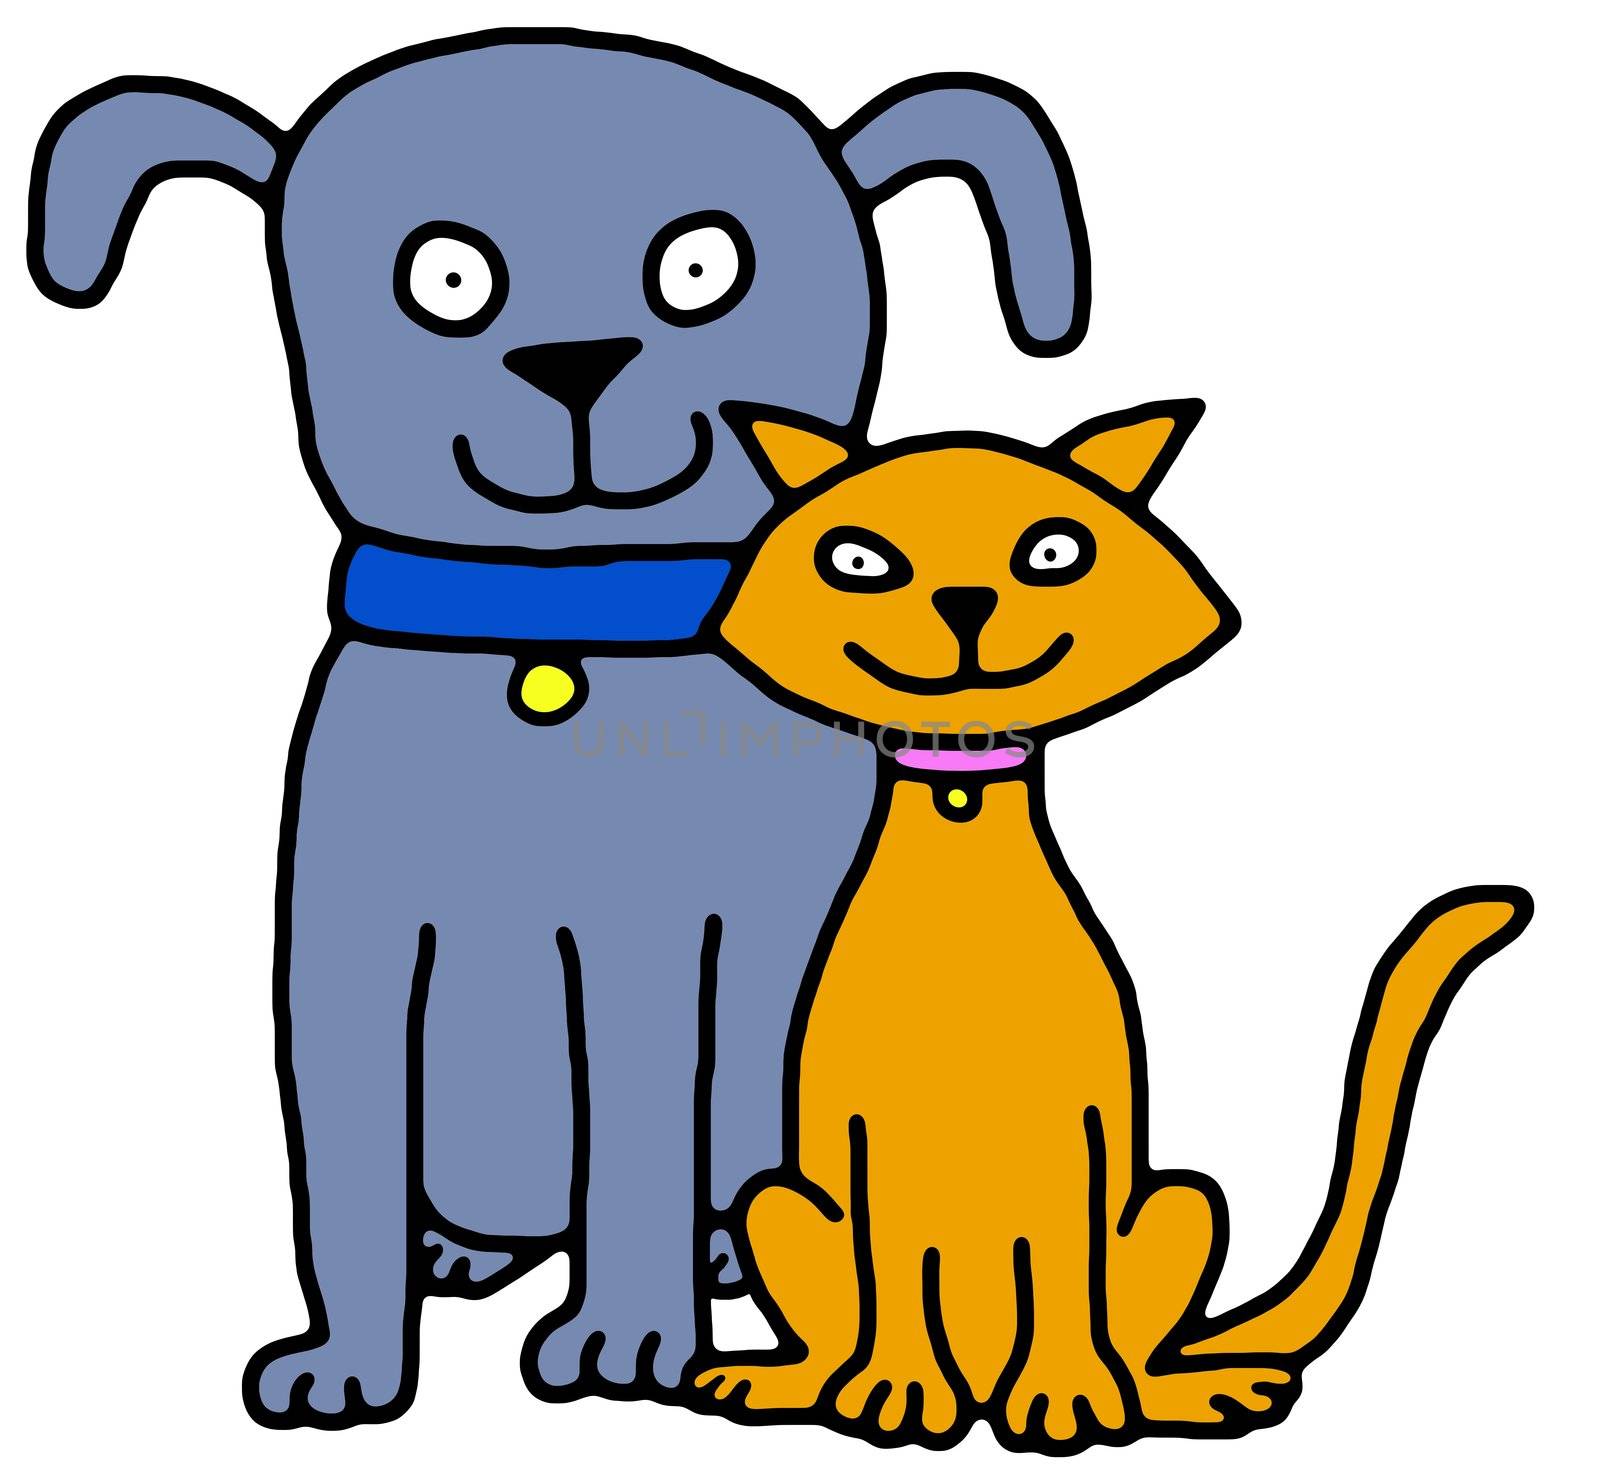 Illustration of a blue dog and orange cat sitting together